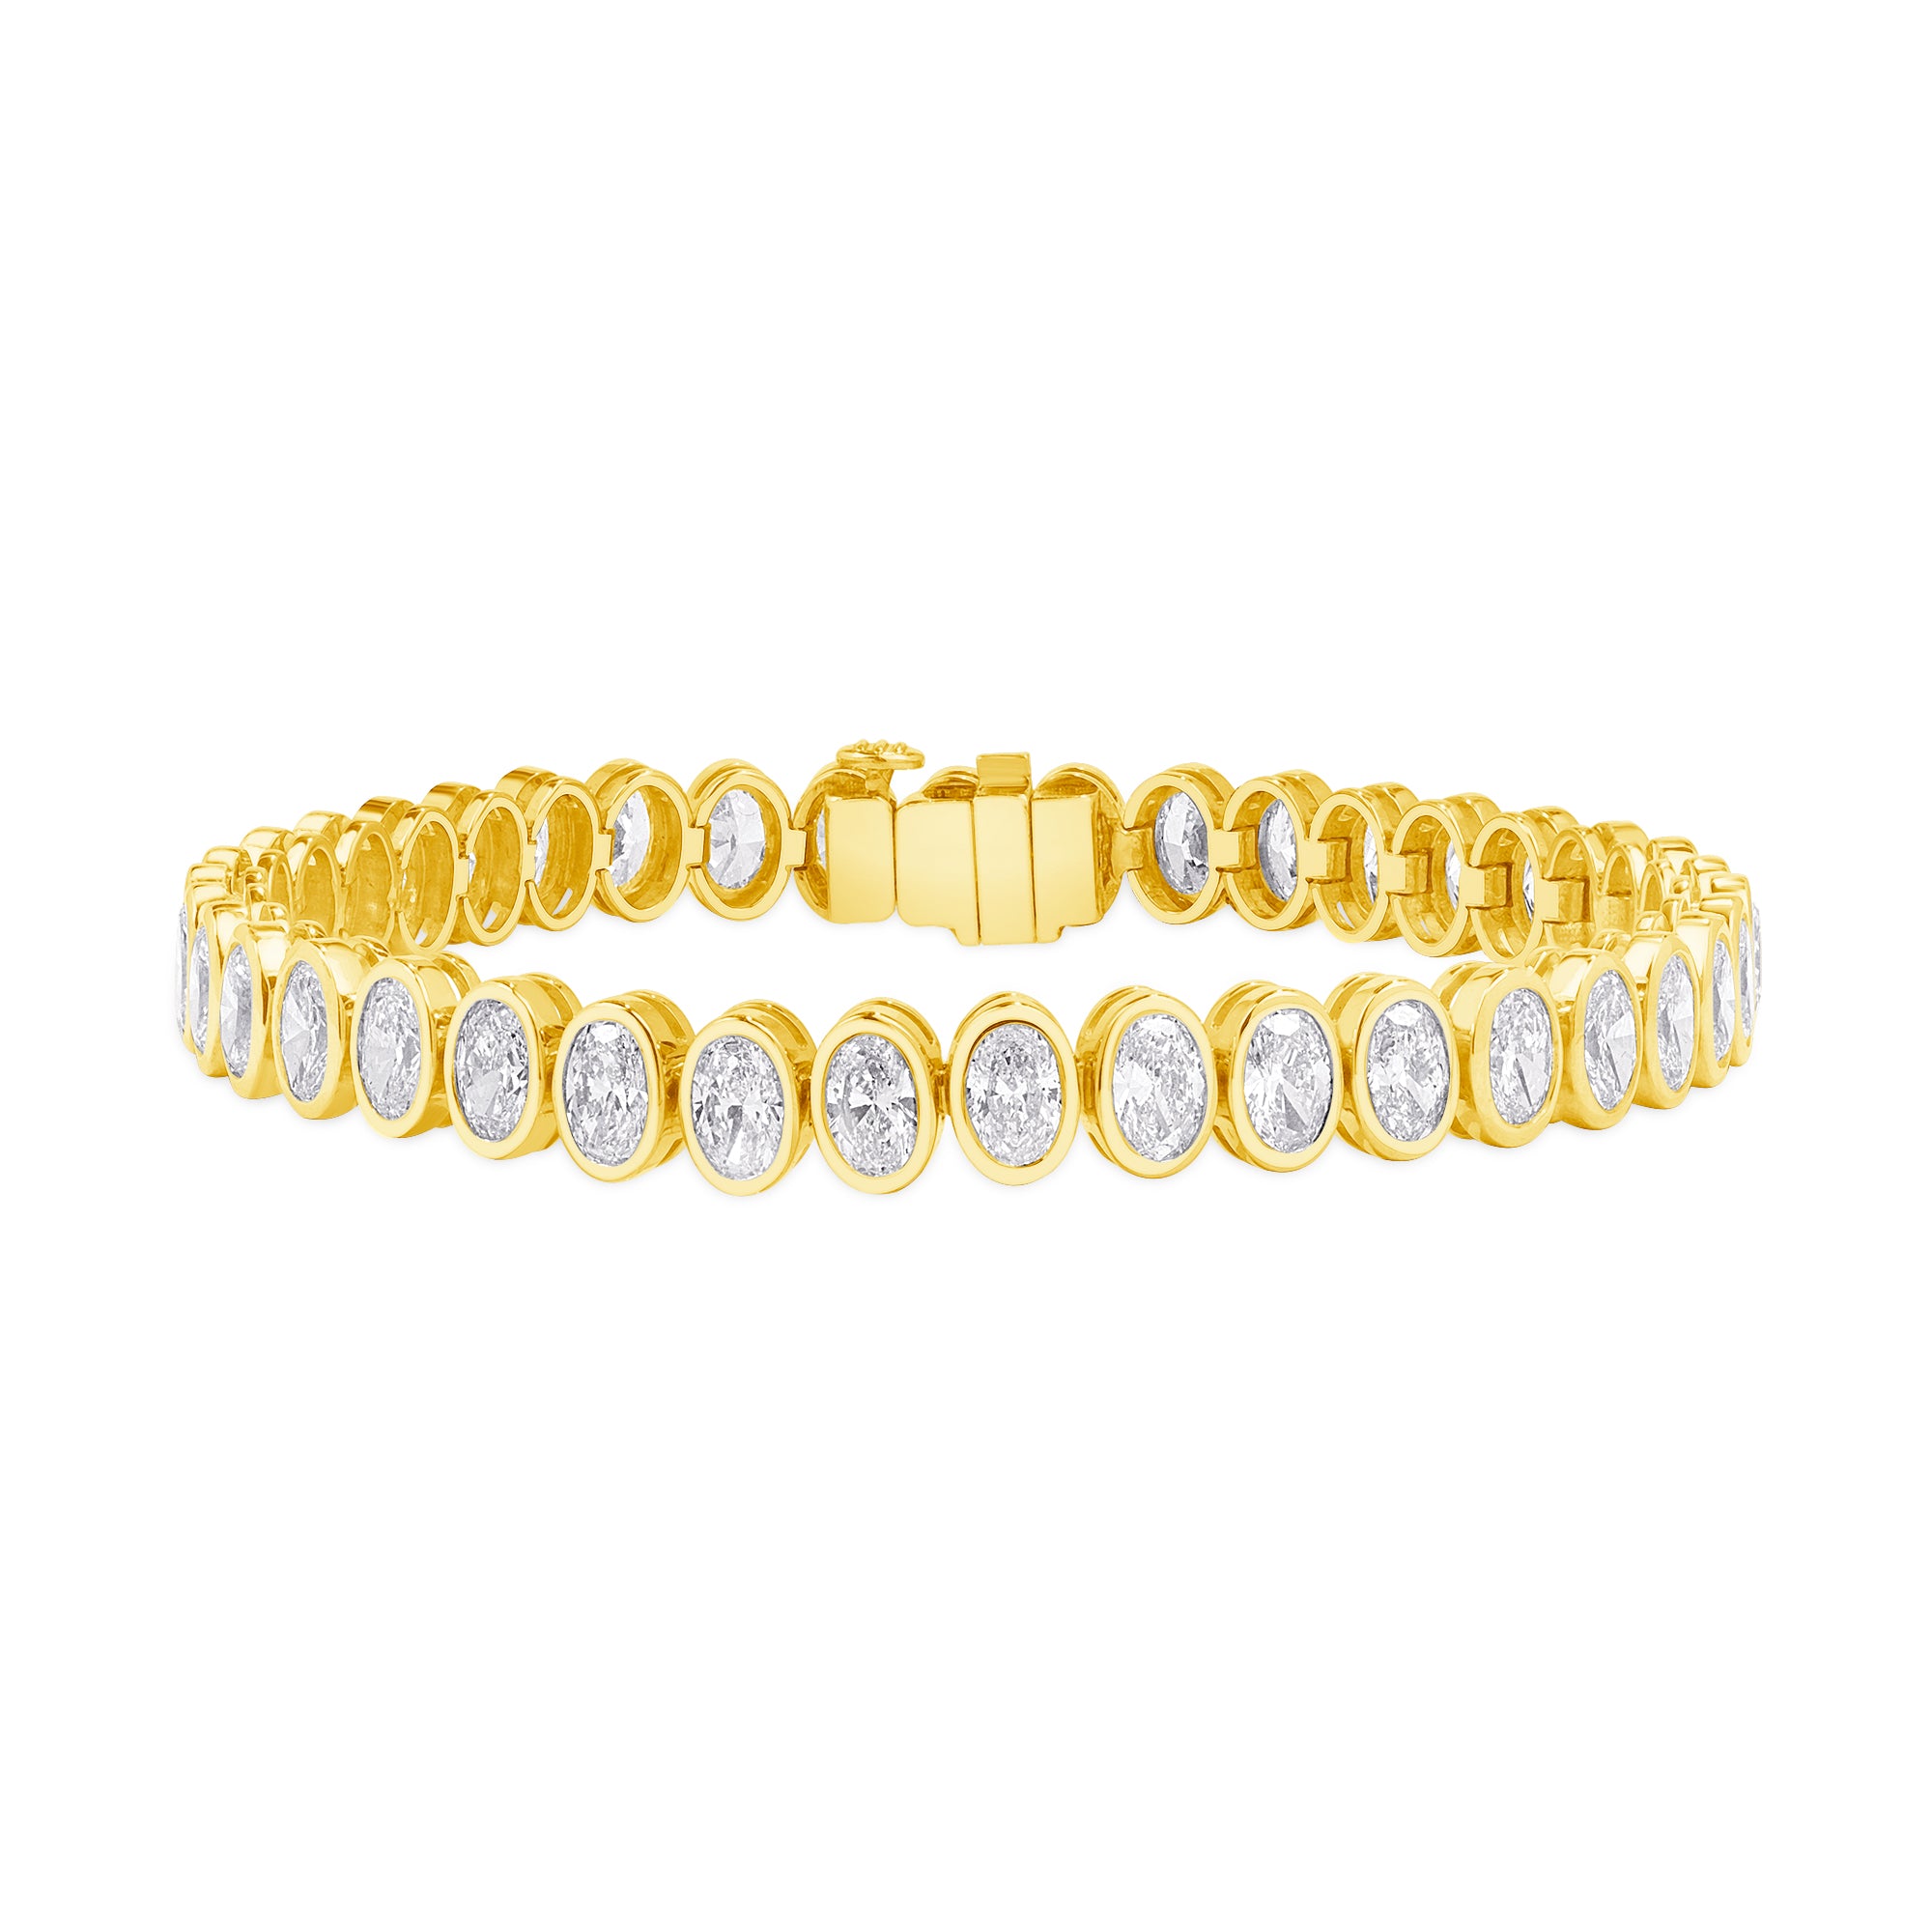 9.94ctw Oval Cut Diamond Tennis Bracelet in 18K Yellow Gold